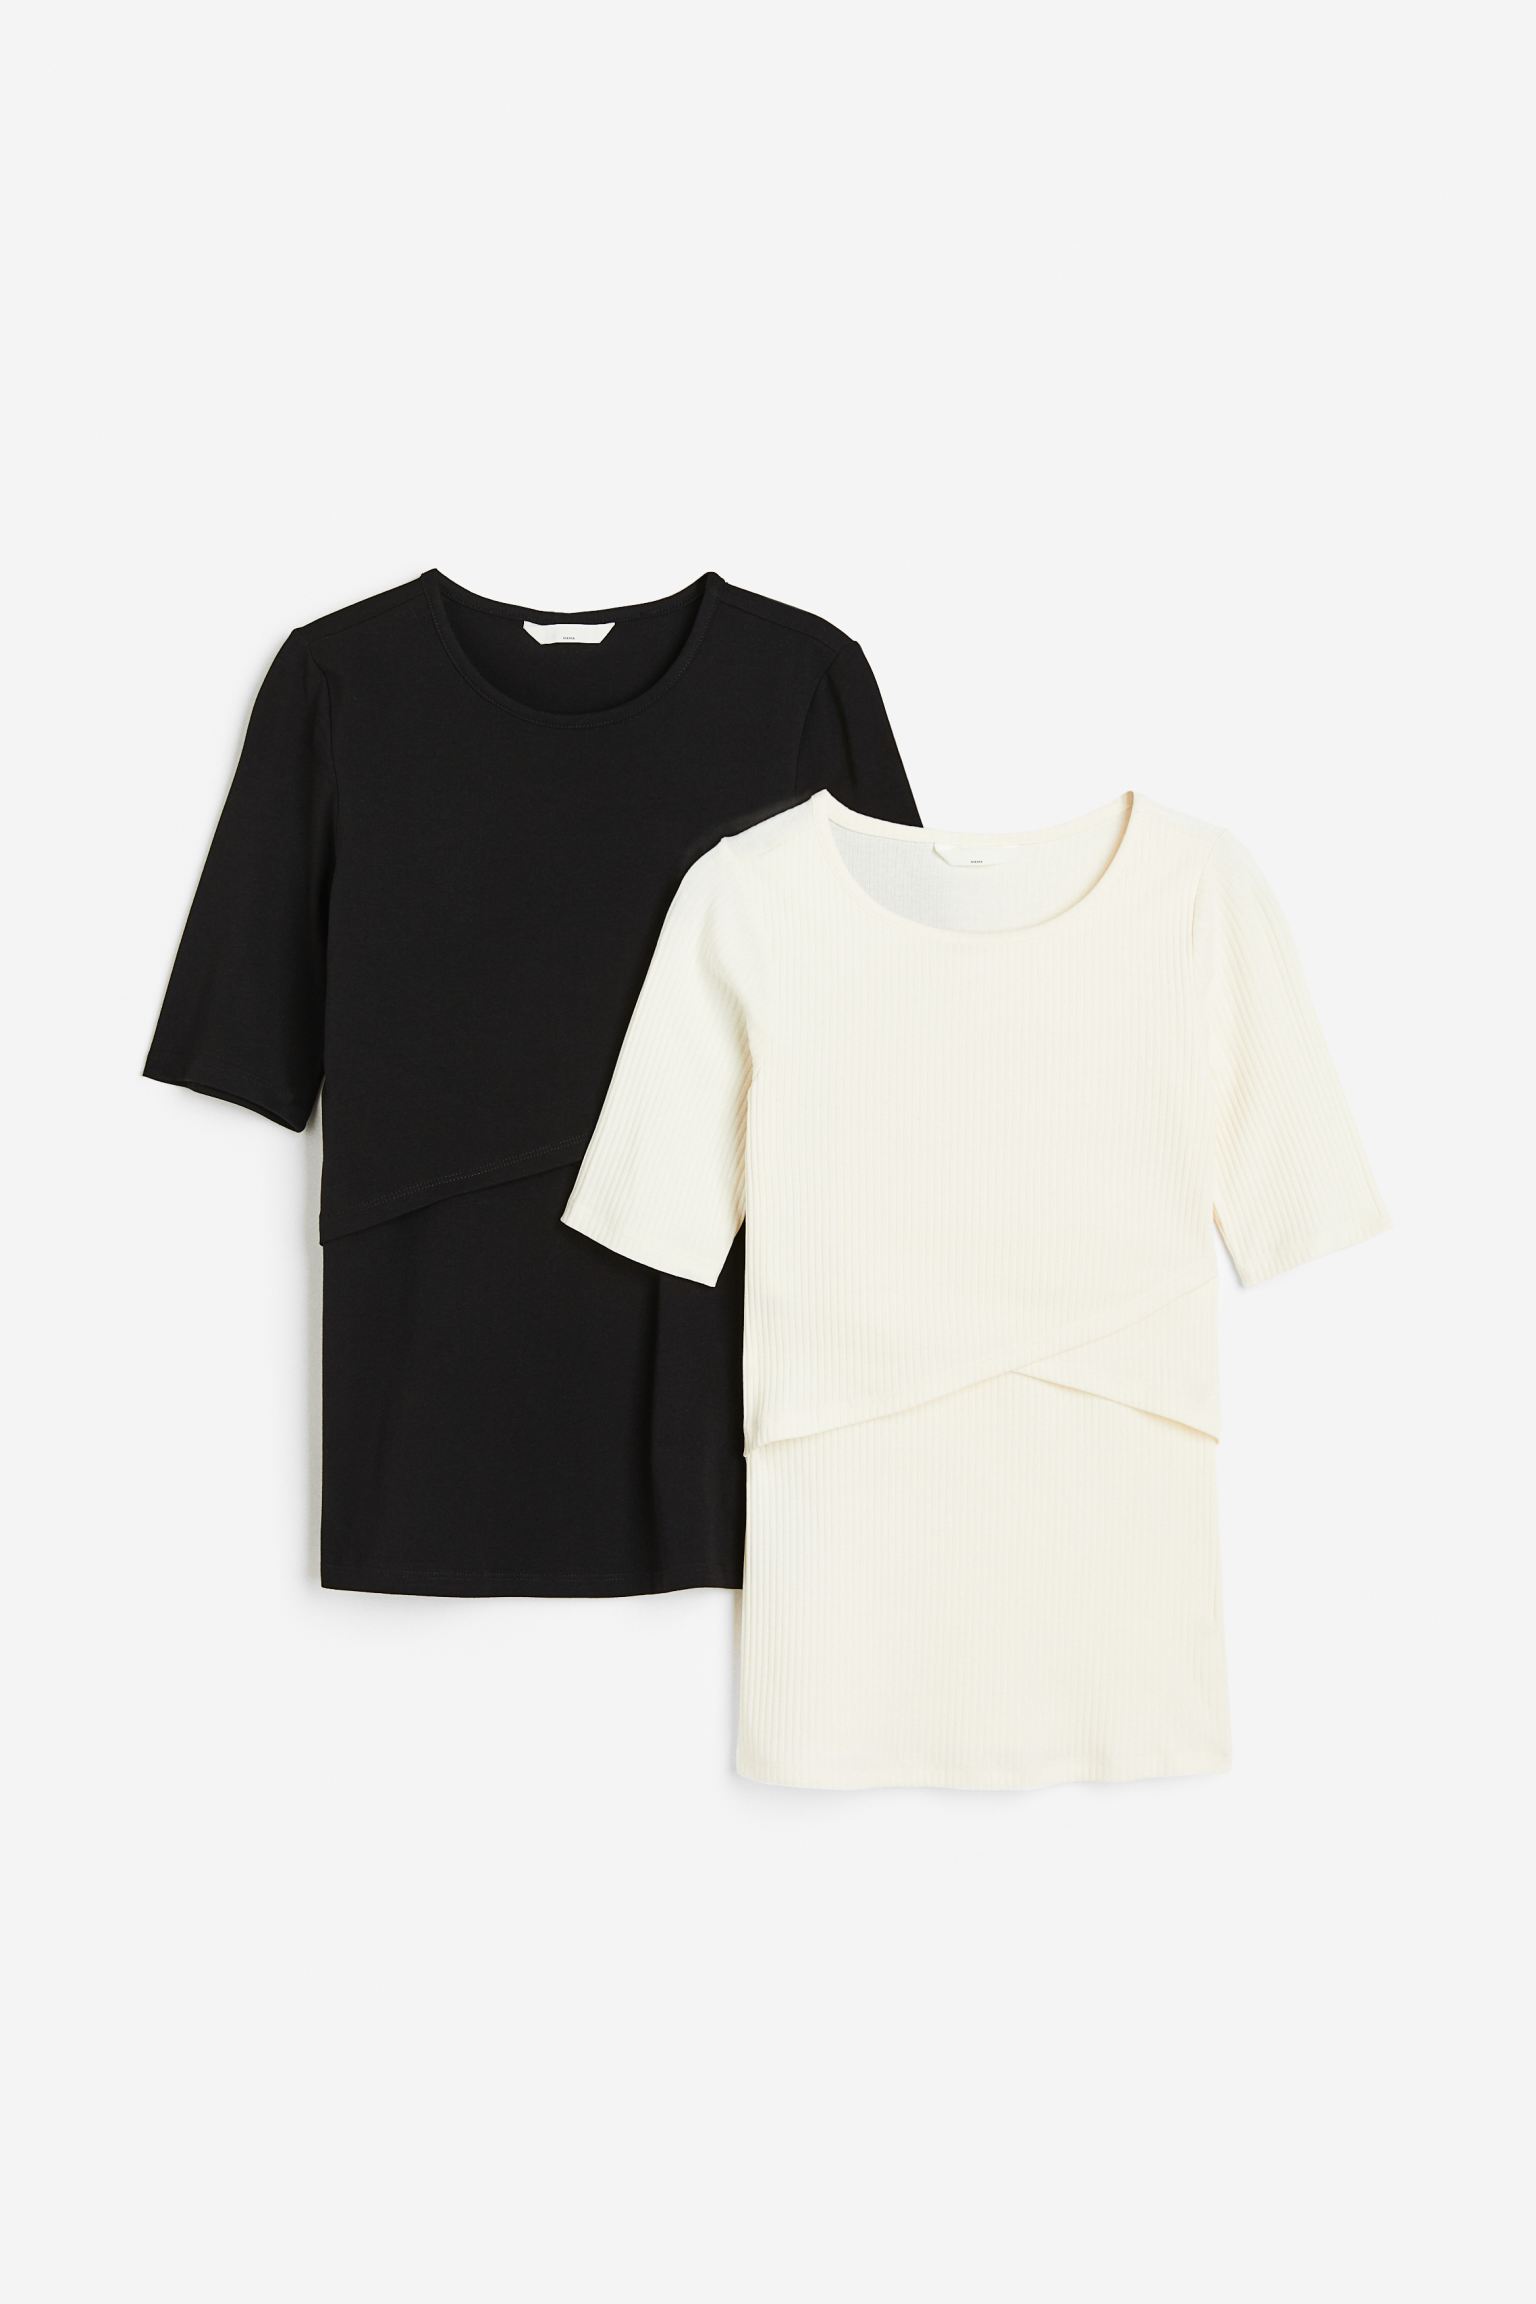 Комплект футболок женских H&M 1030507004 черных S (доставка из-за рубежа)